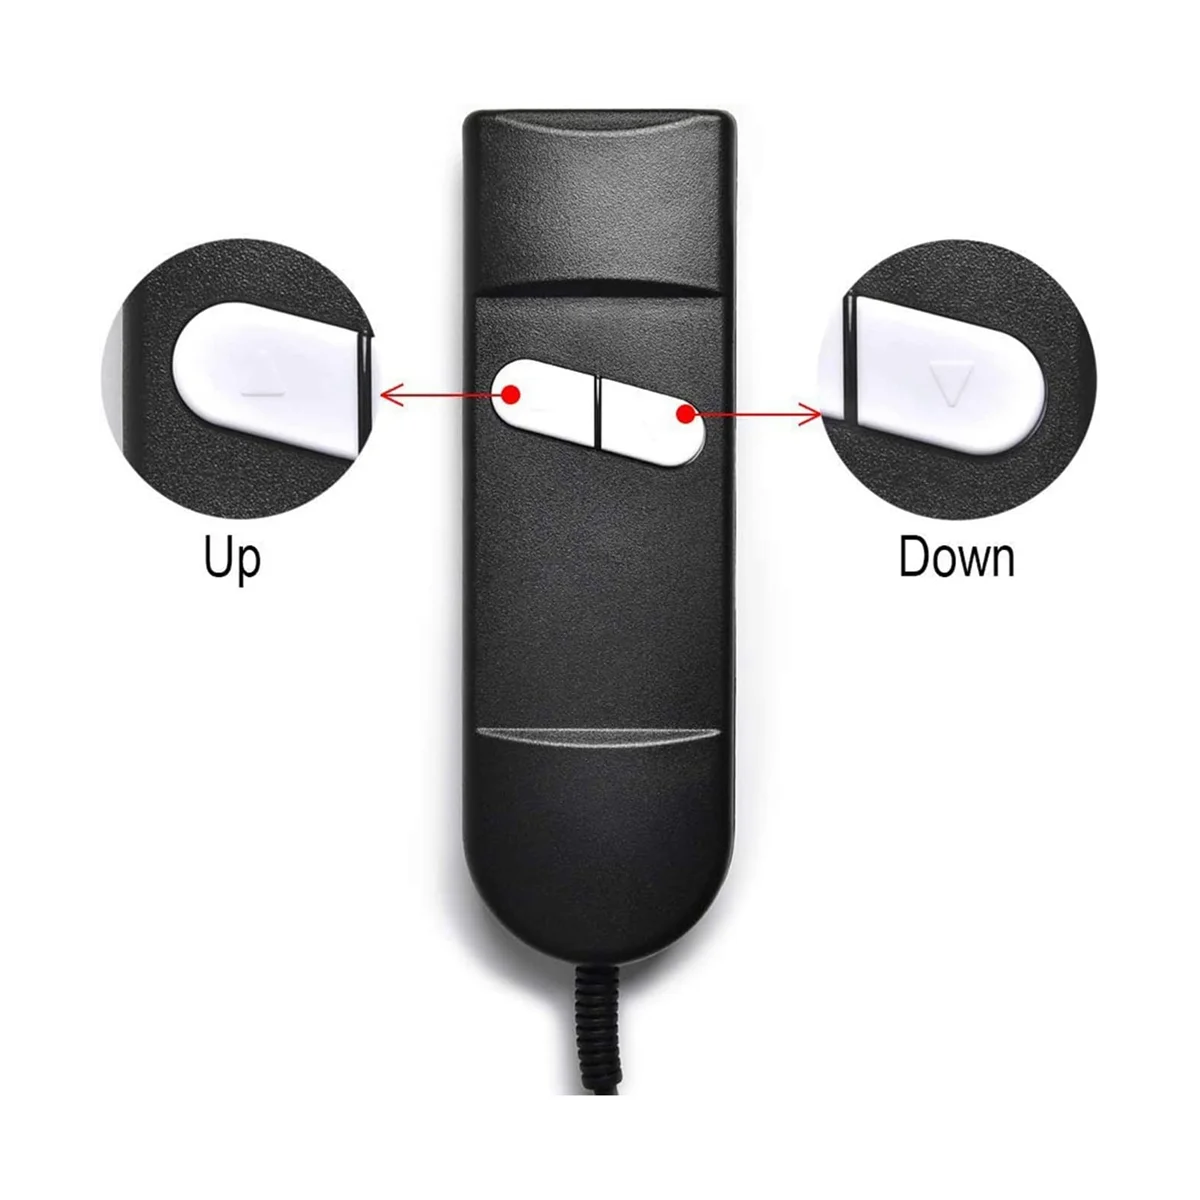 Замена пульта дистанционного управления креслом-подъемником, 5-Контактный 2-кнопочный Пульт дистанционного управления креслом-откидышем для Okin Limoss Pride - Elbow